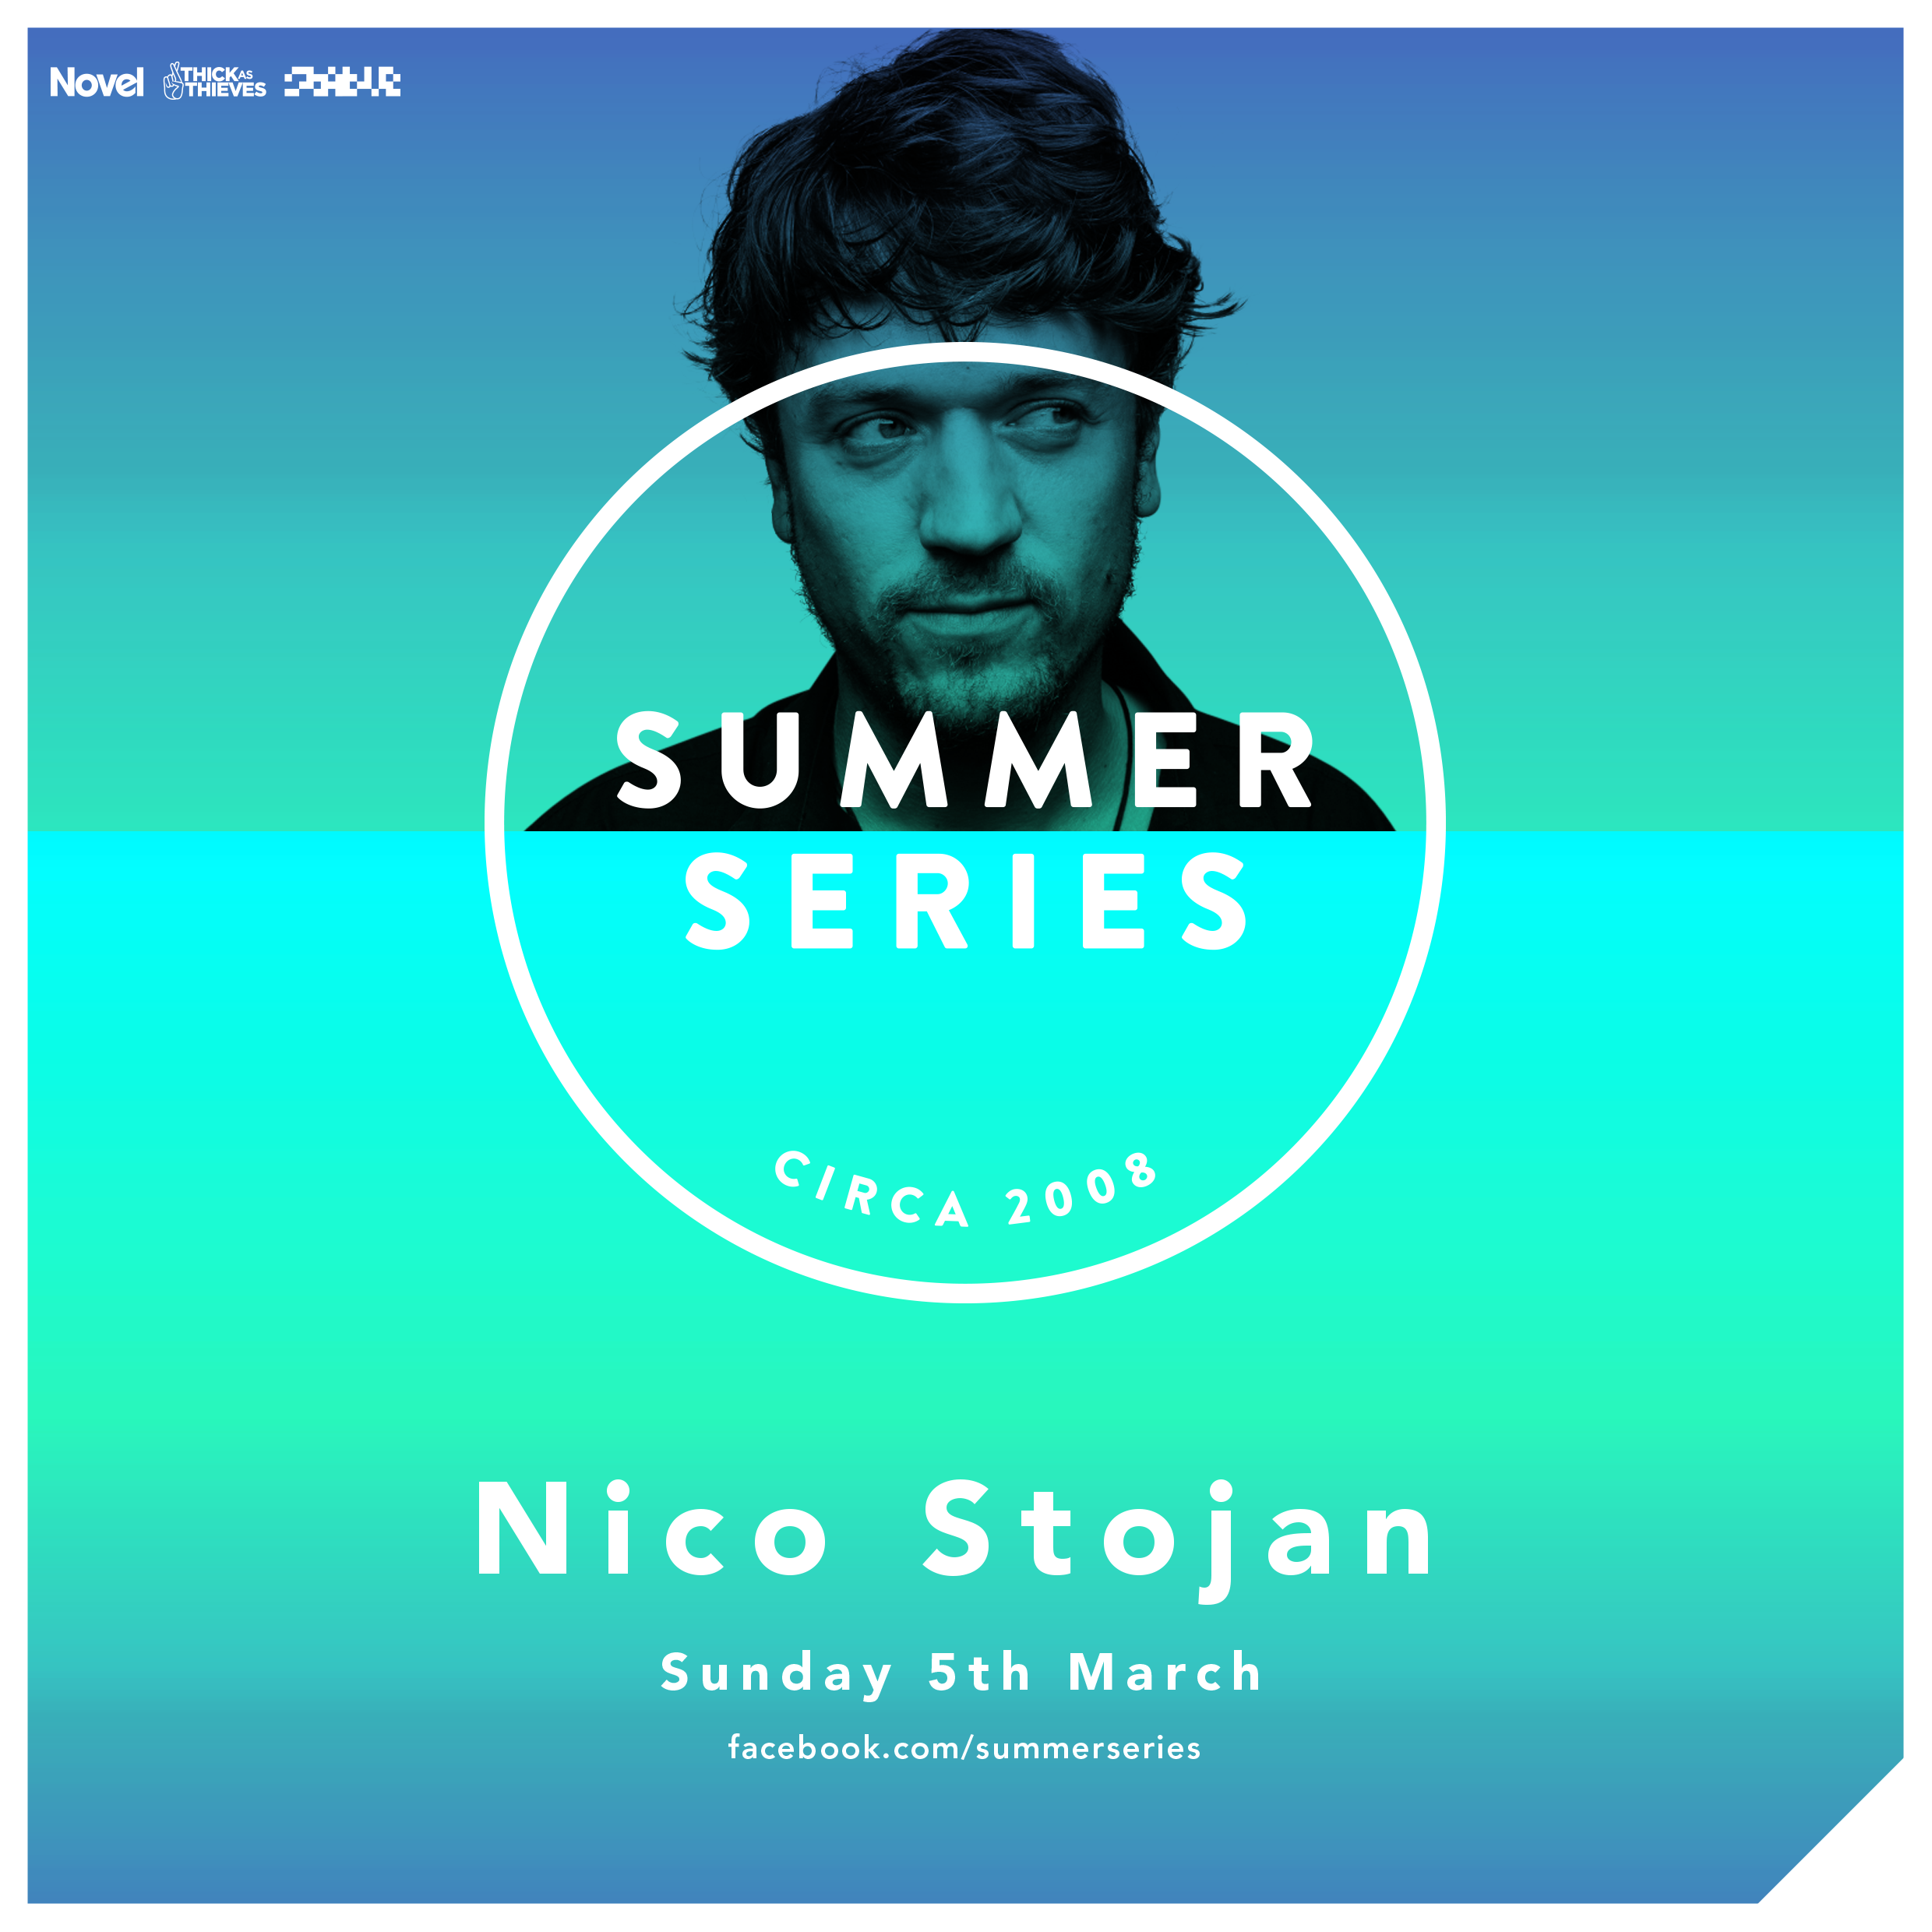 Summer Series with Nico Stojan